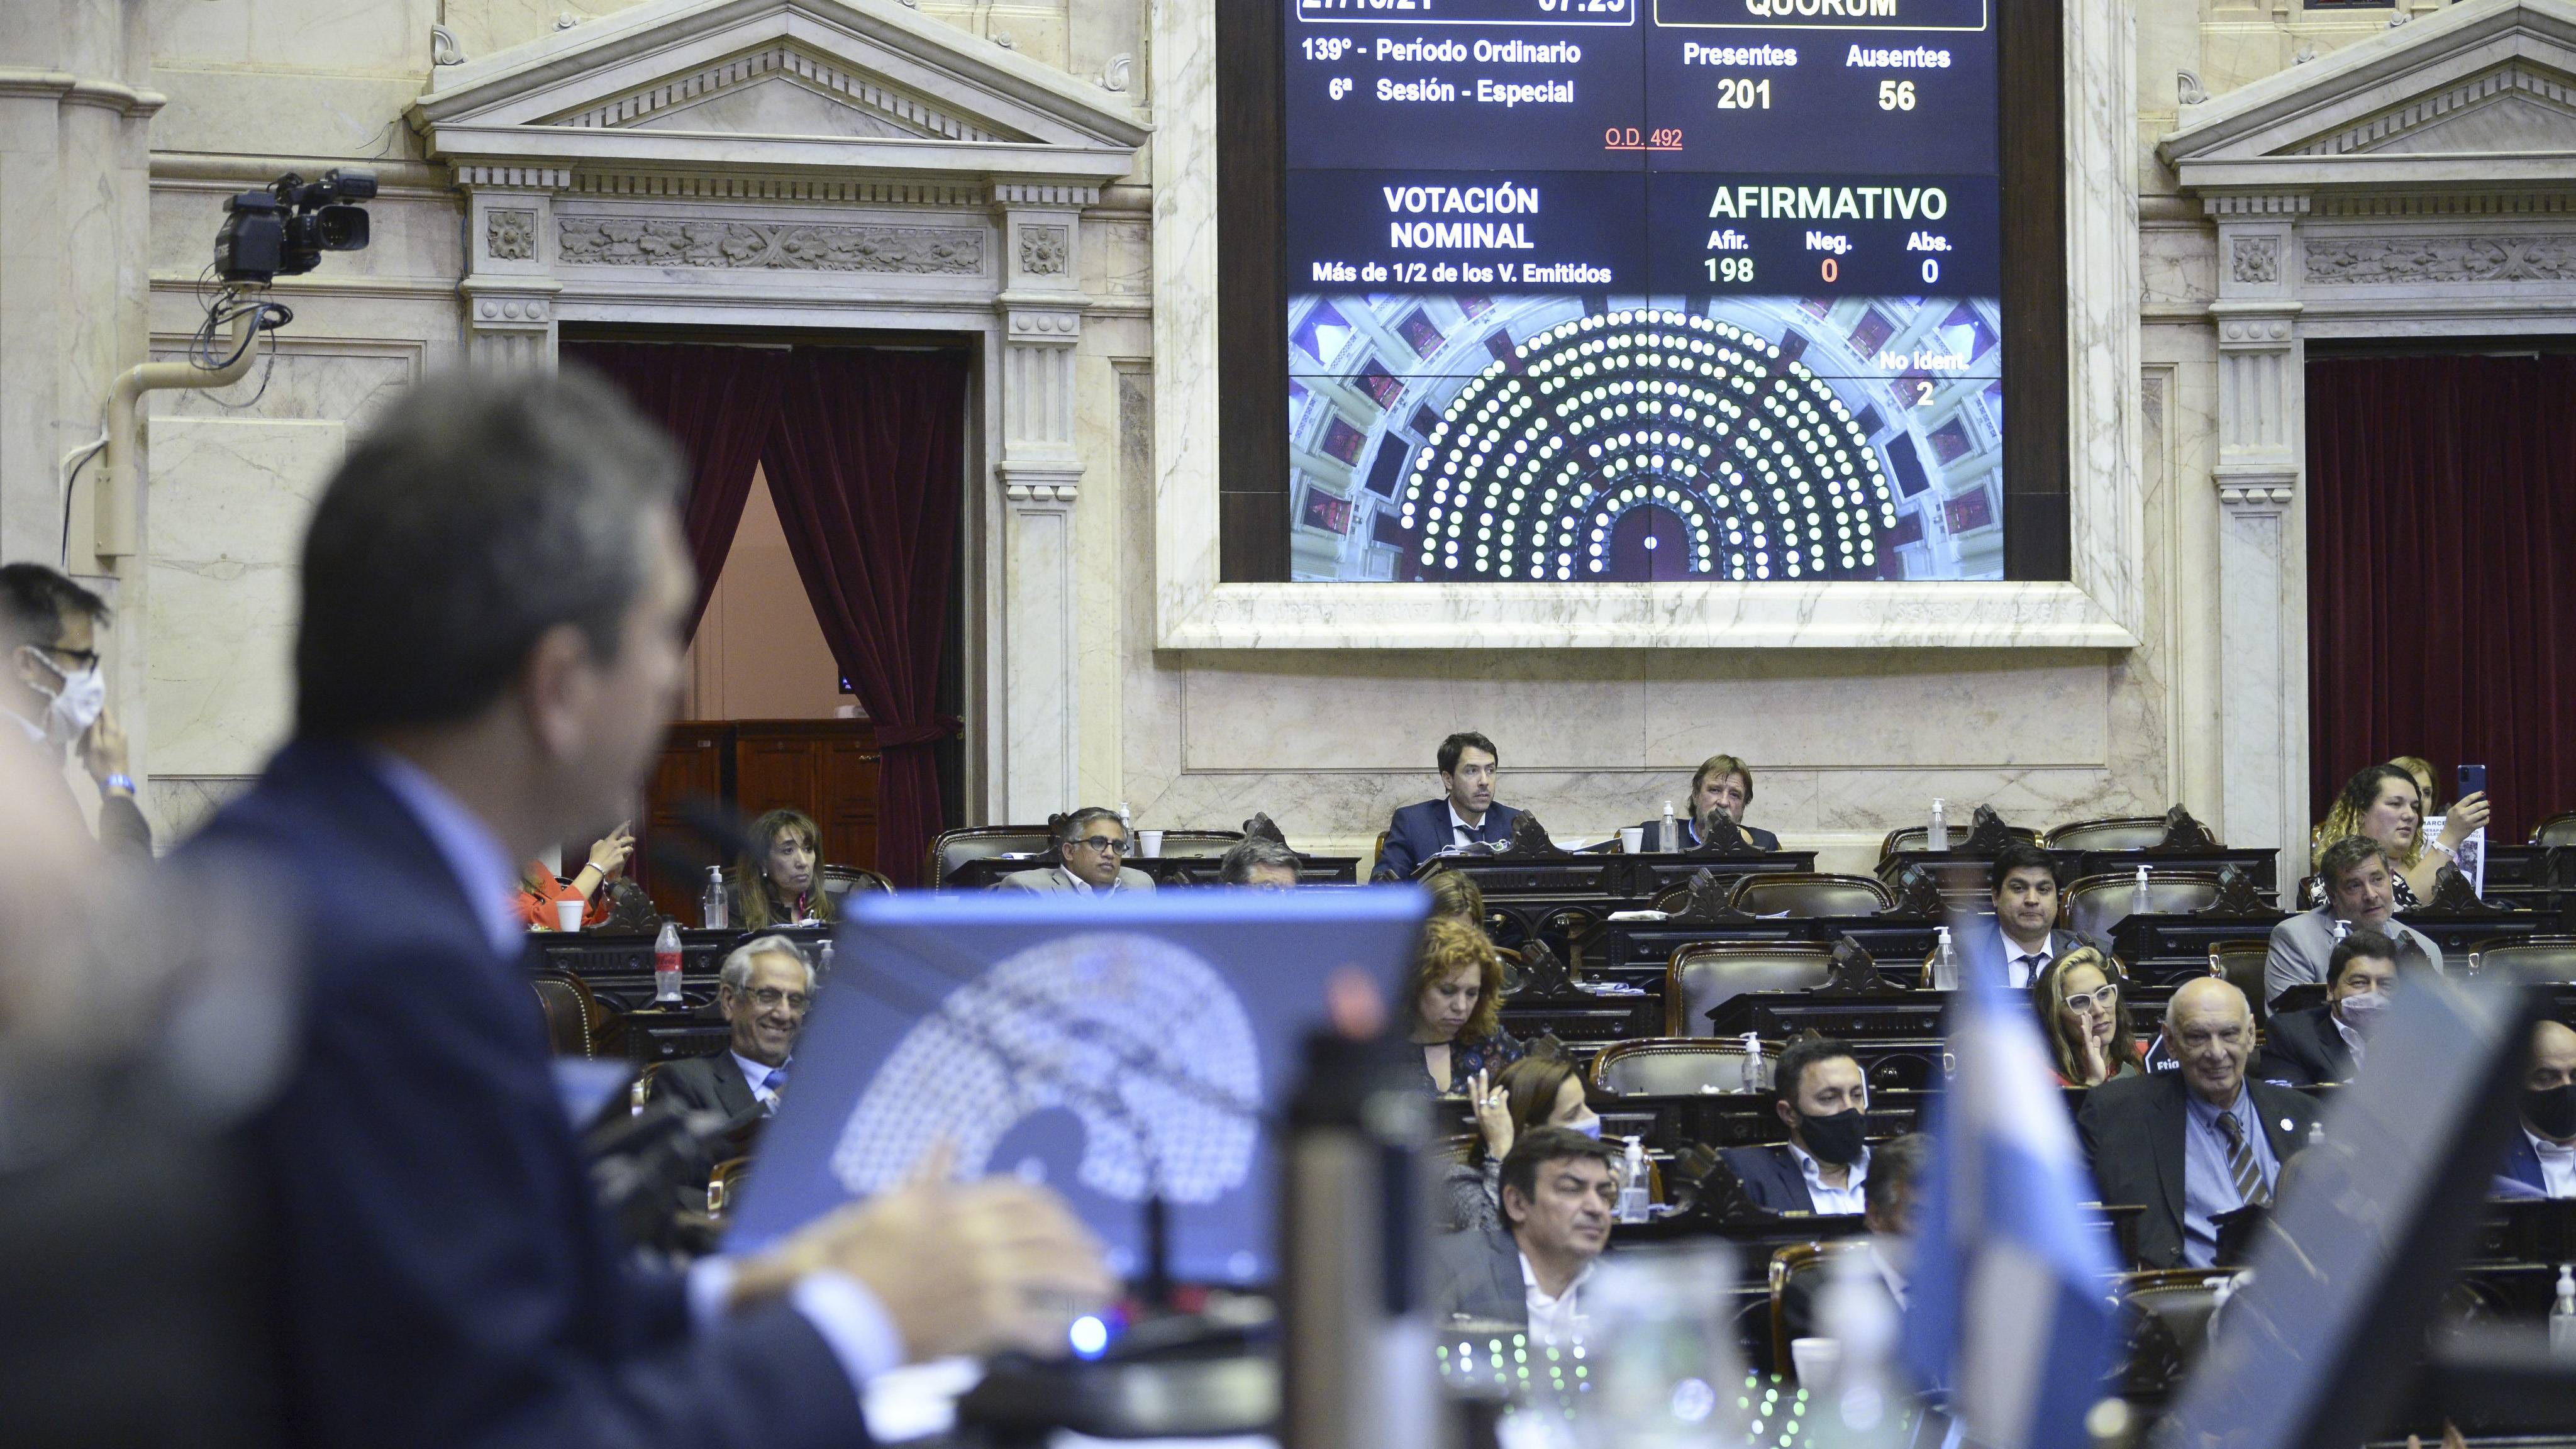 La Cámara de Diputados aprobó por 198 votos a favor, ninguno en contra  el proyecto de "Alivio fiscal" para los sectores más afectados por la pandemia. (Foto: HCDN)